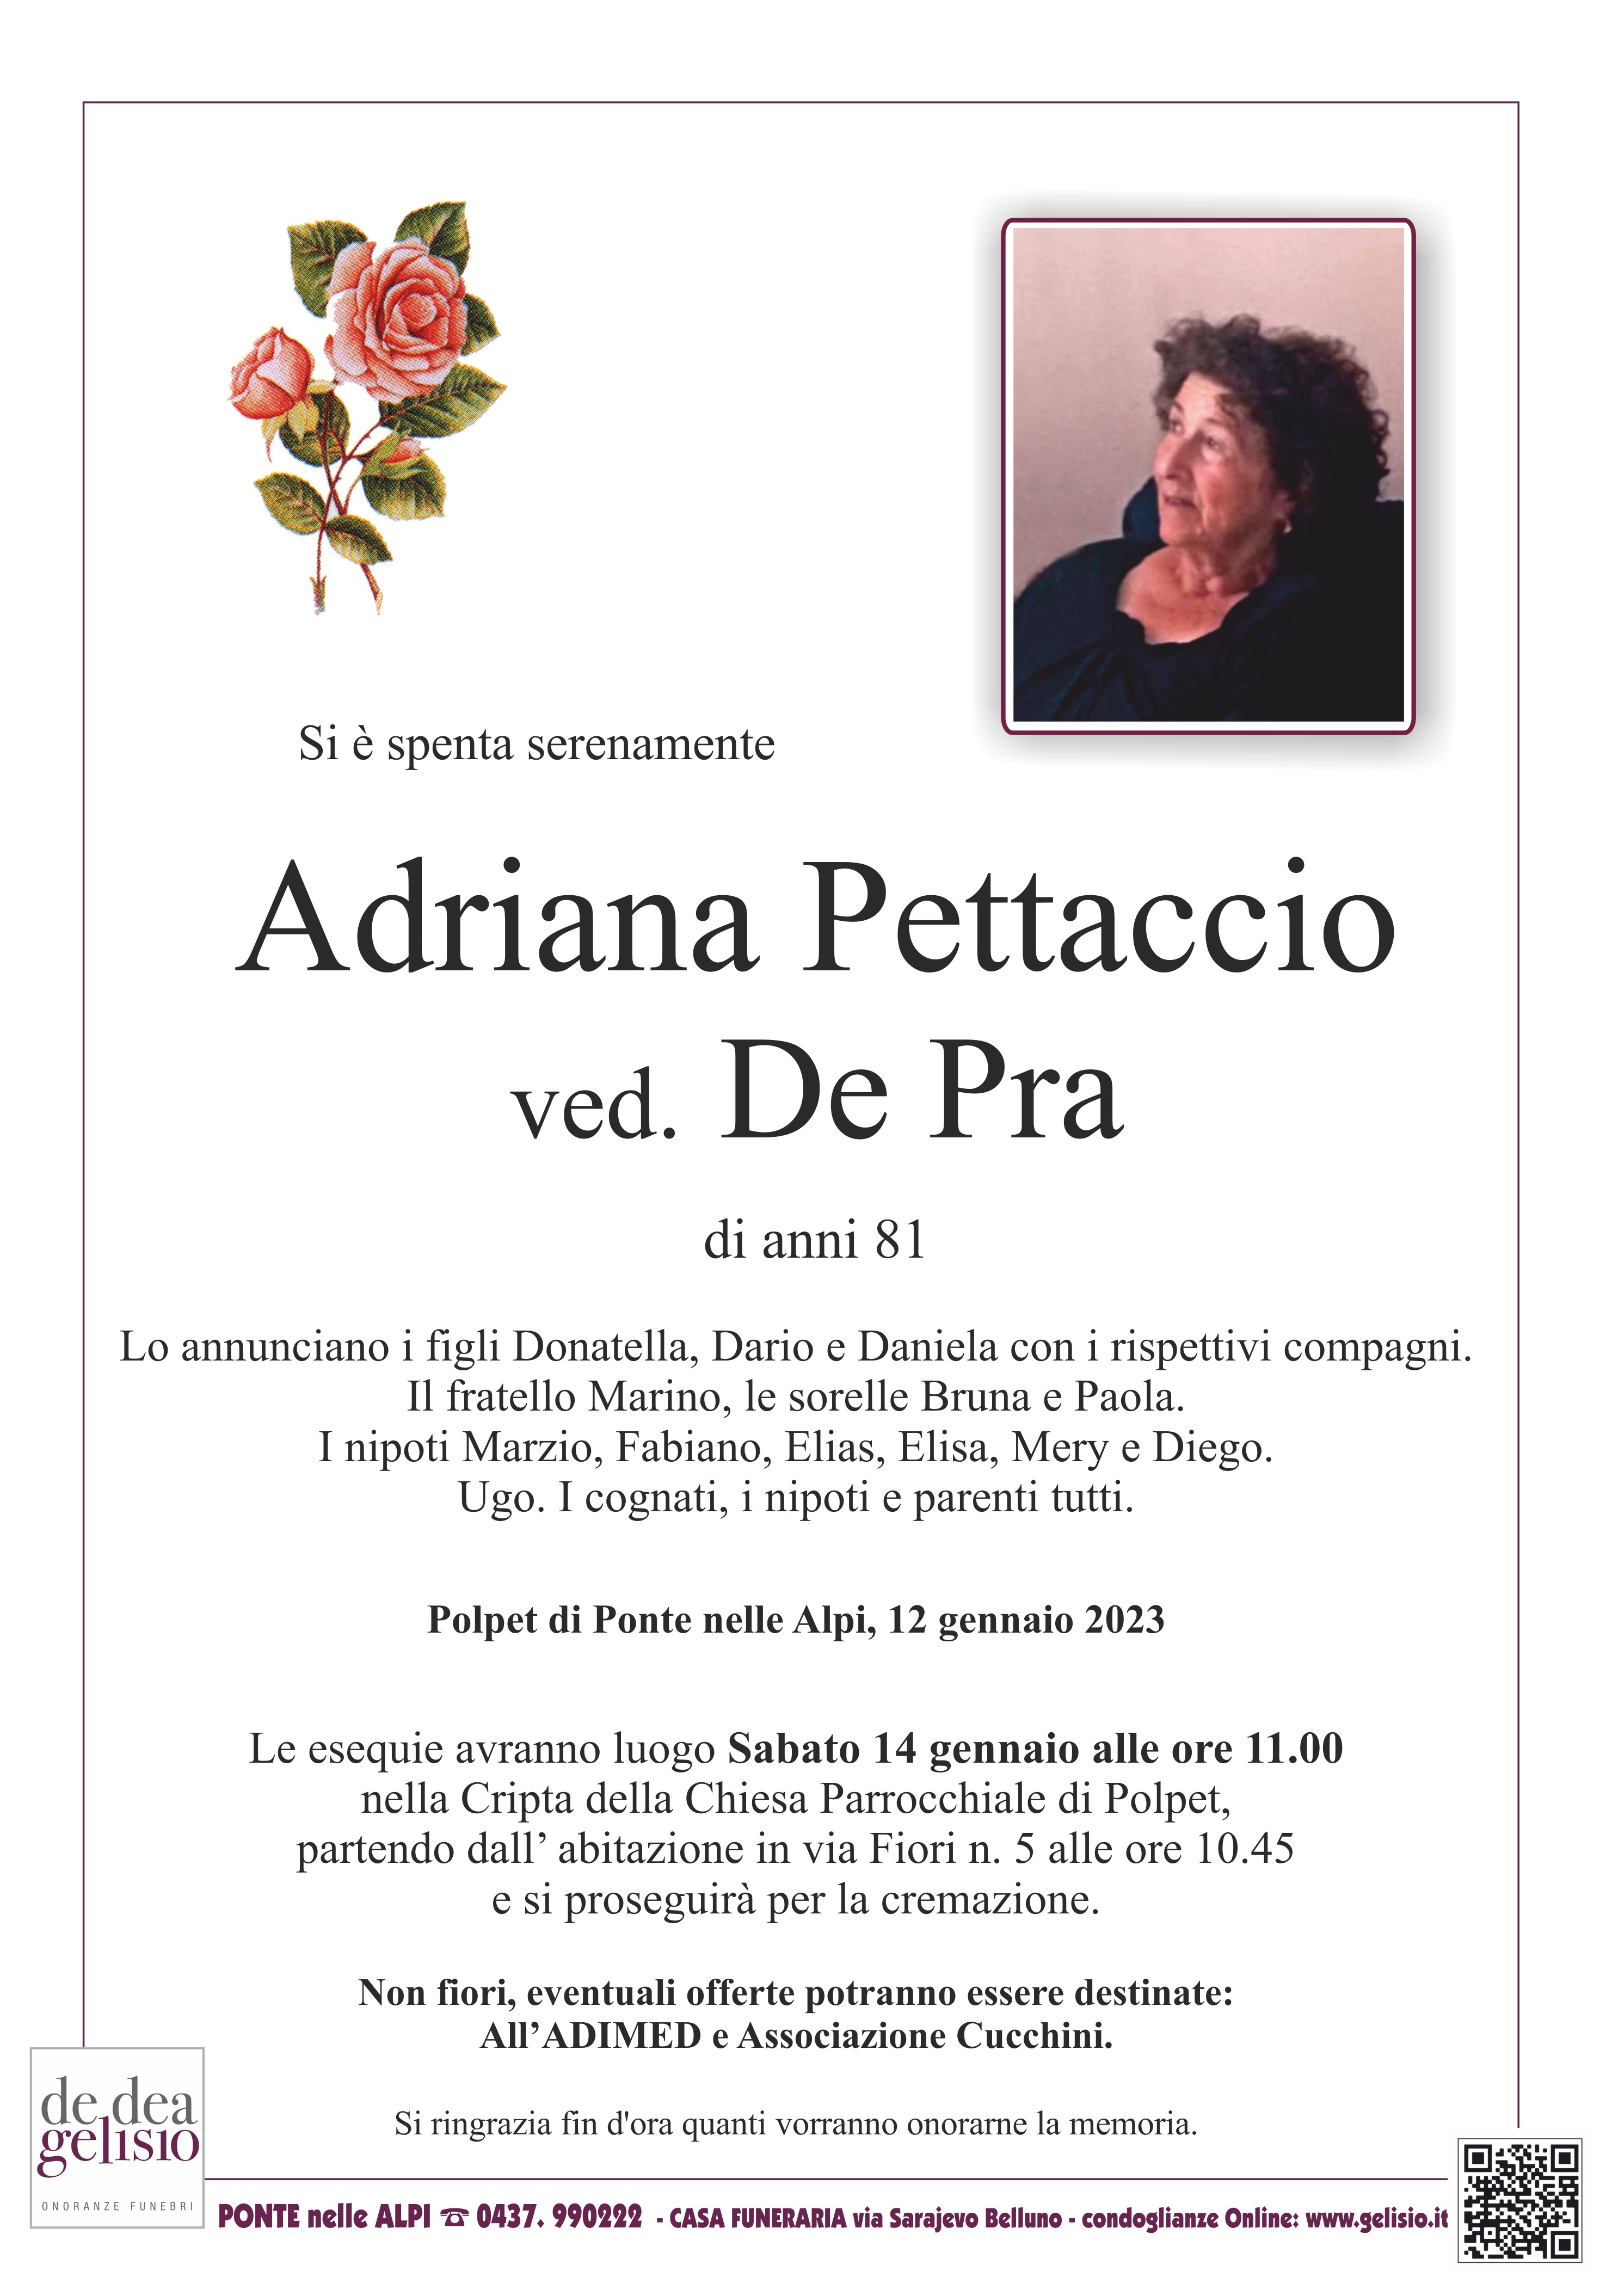 Pettaccio Adriana